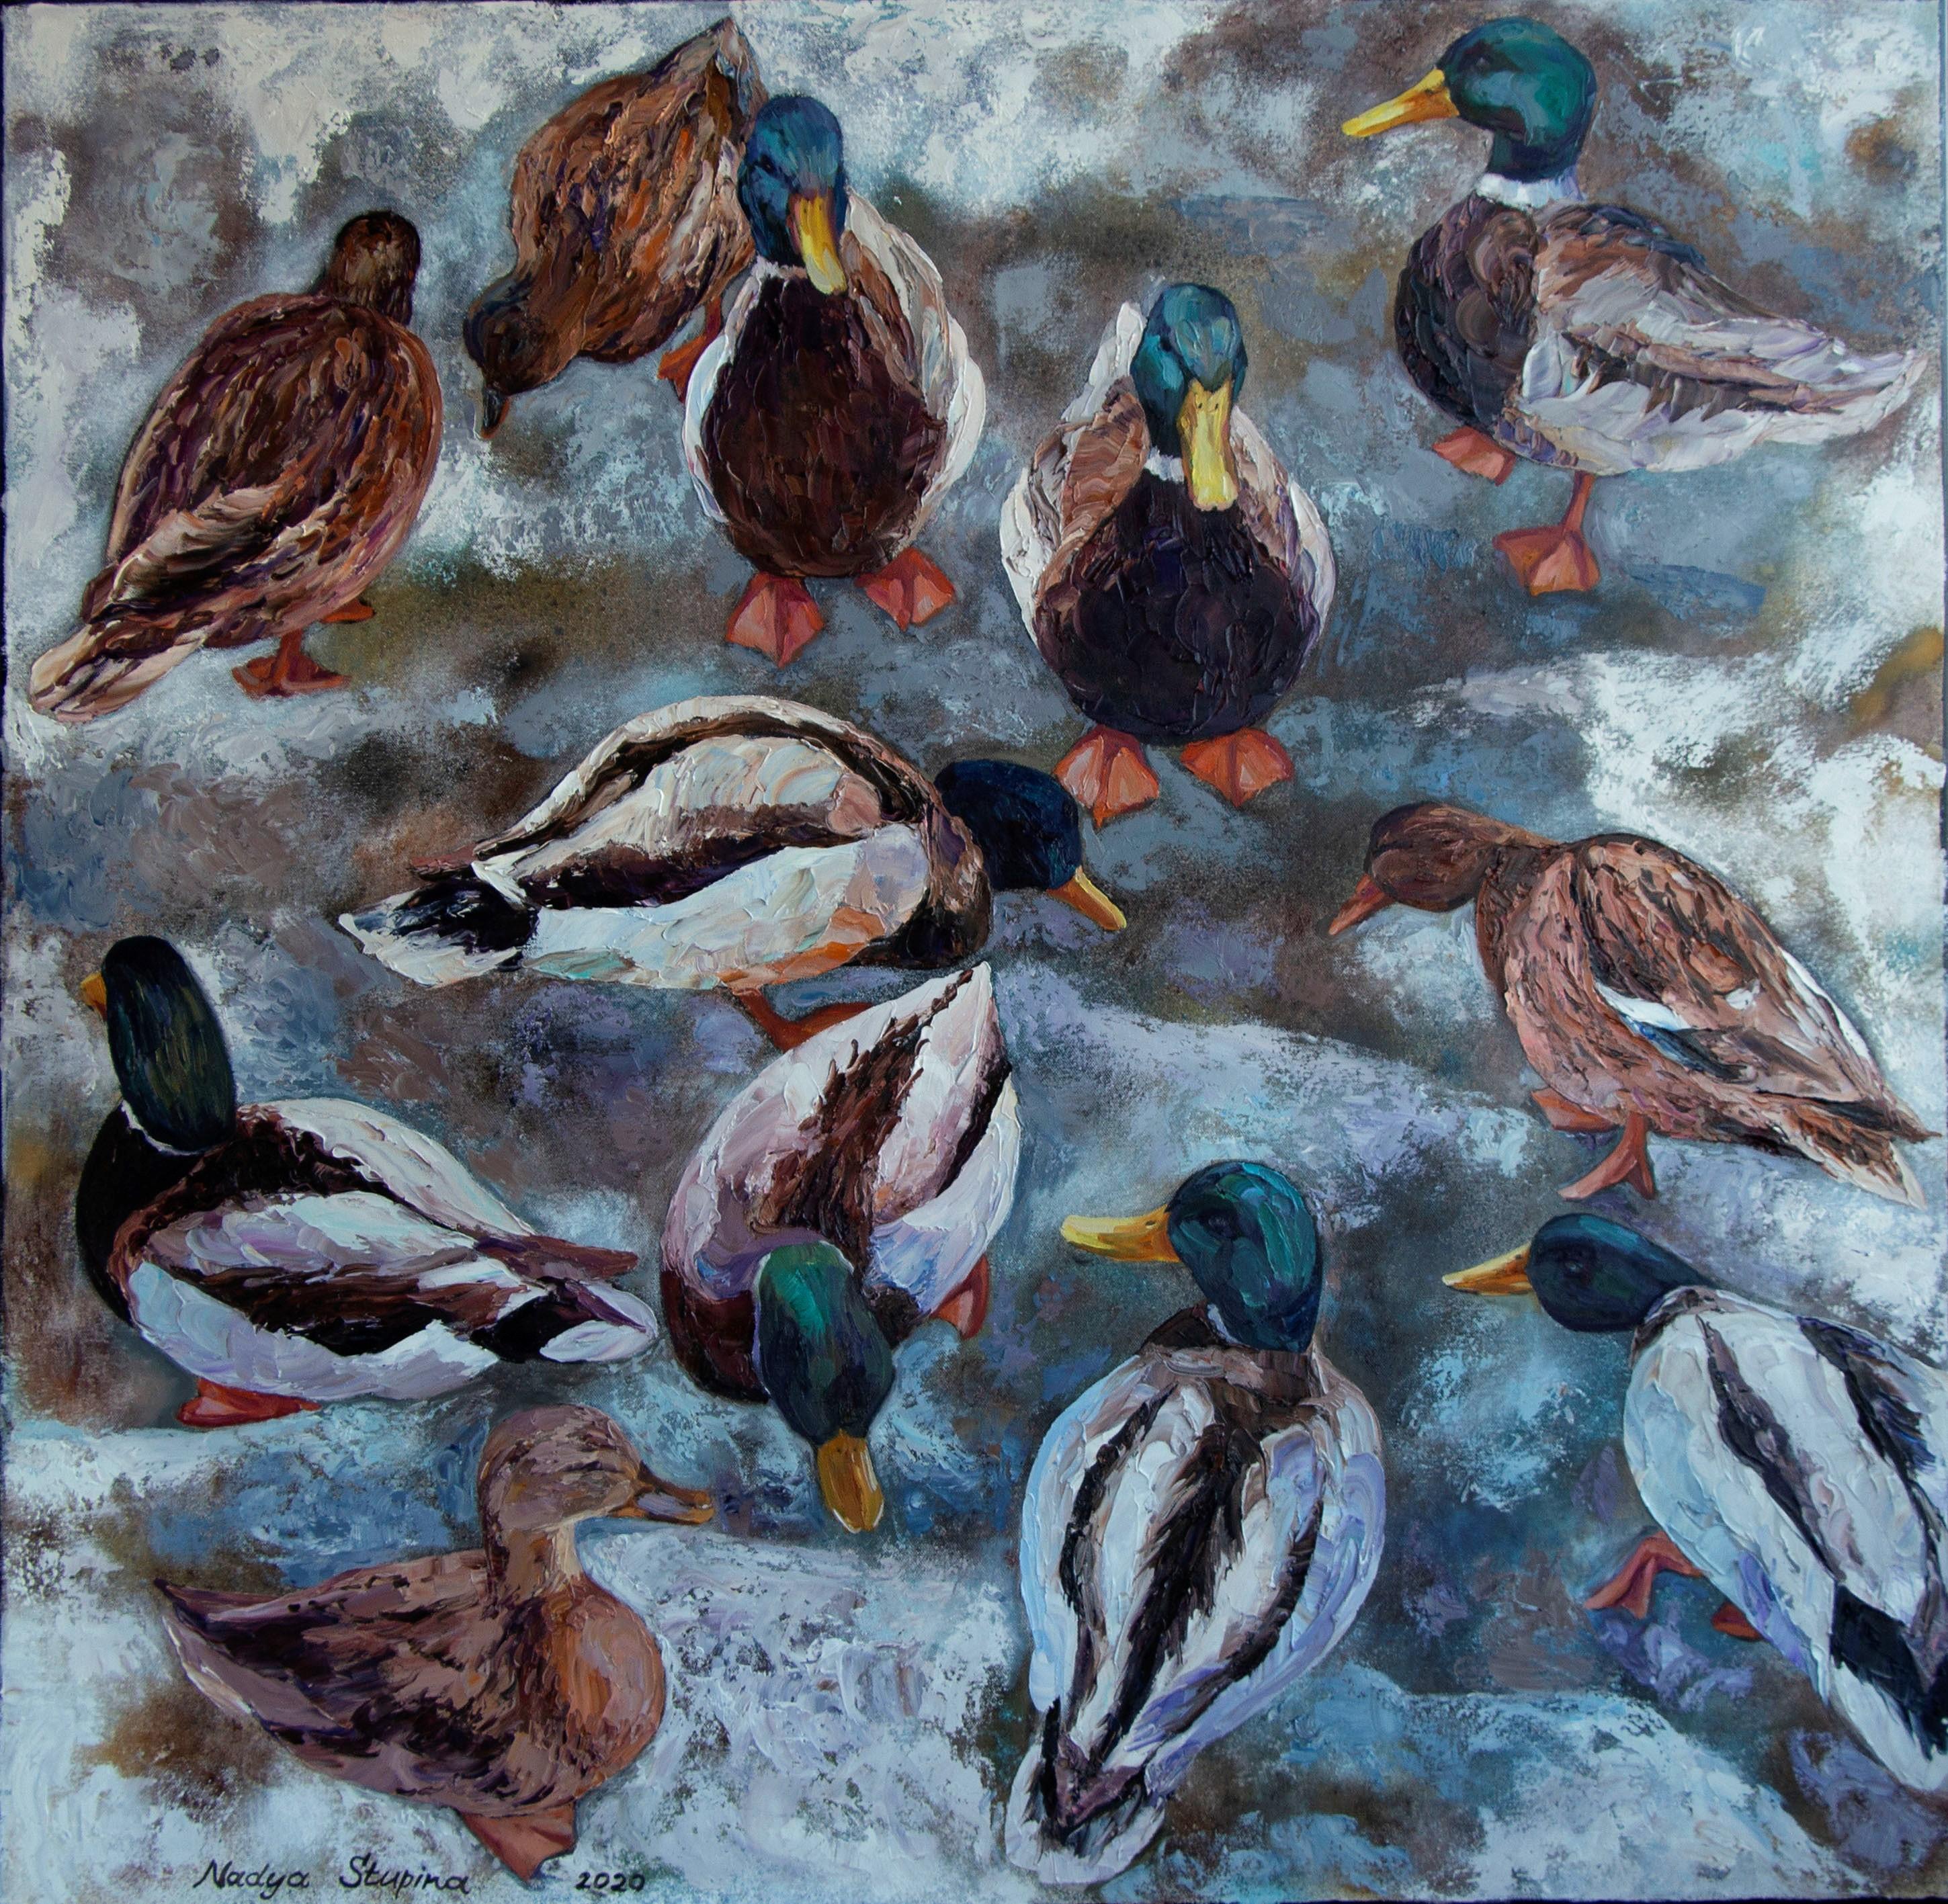 Nadezda Stupina Animal Painting - Christmas ducks